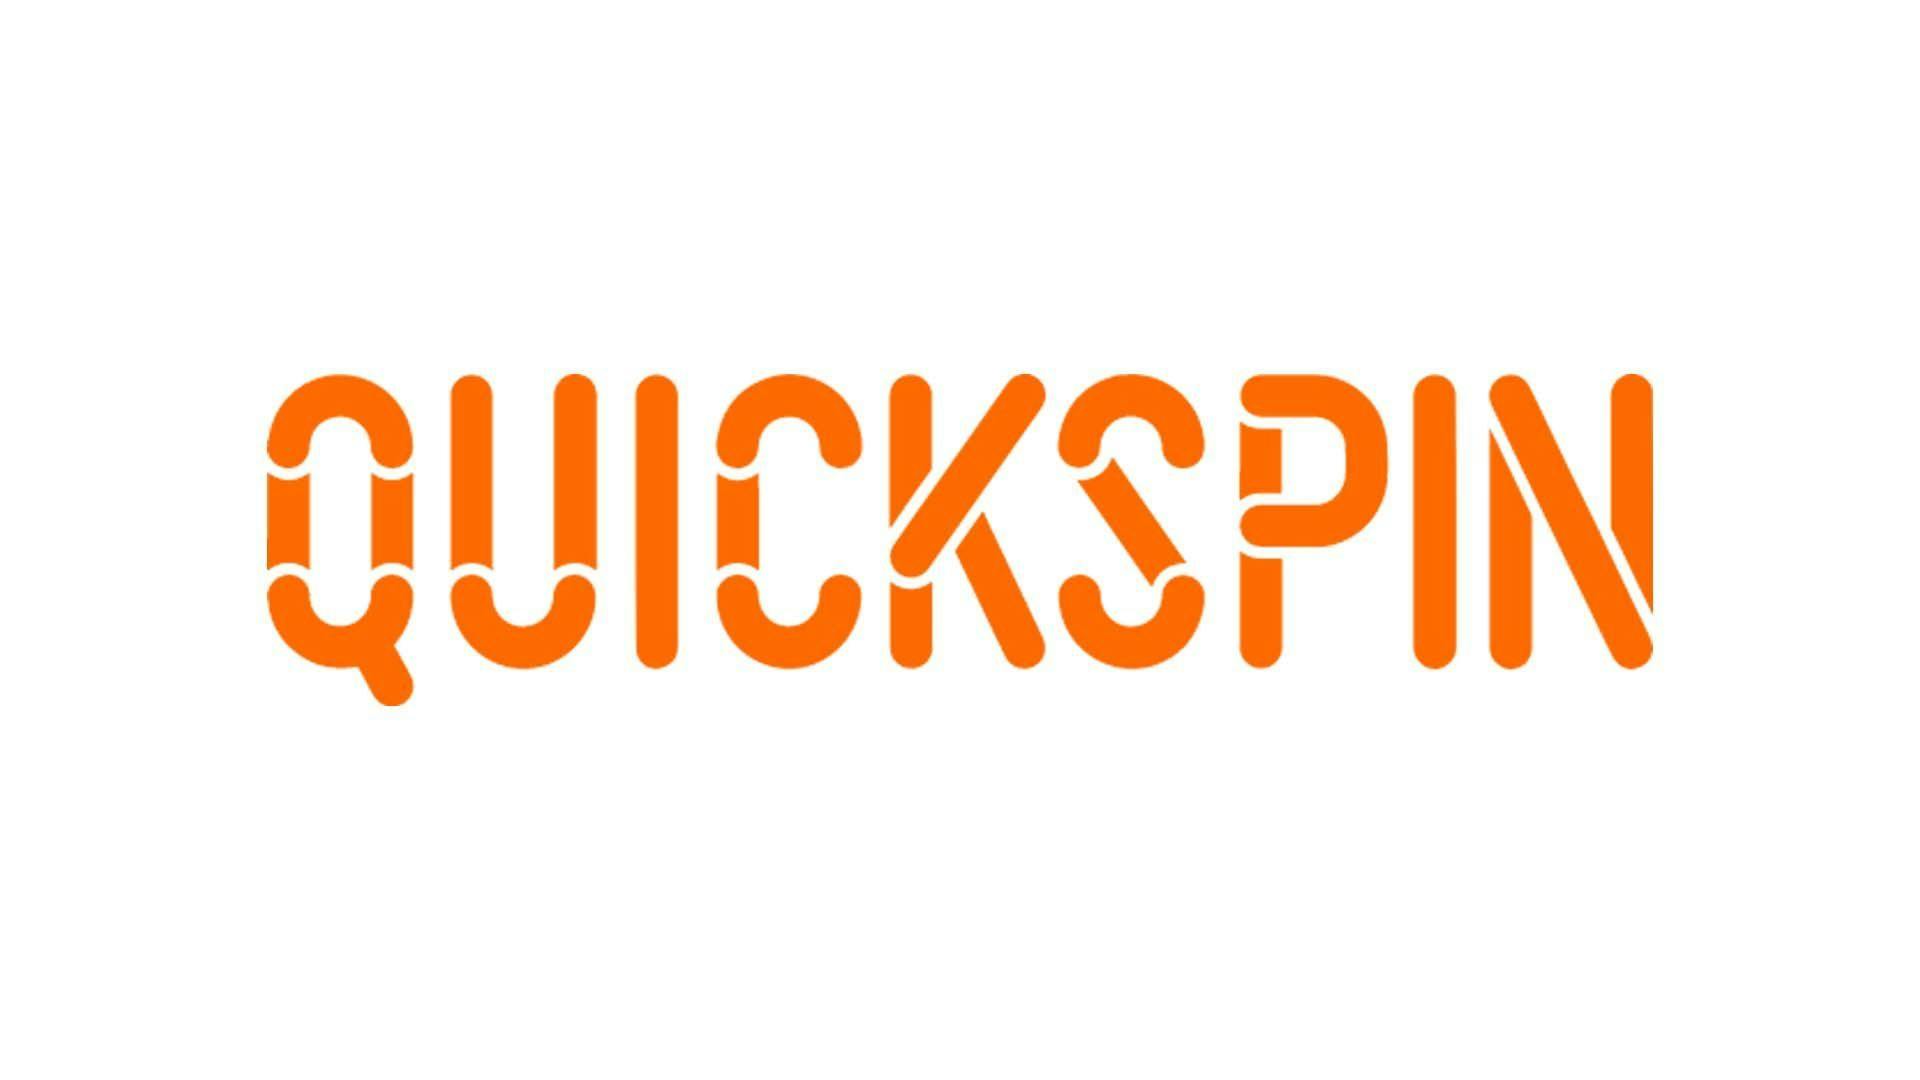 Quickspin Provider Logo